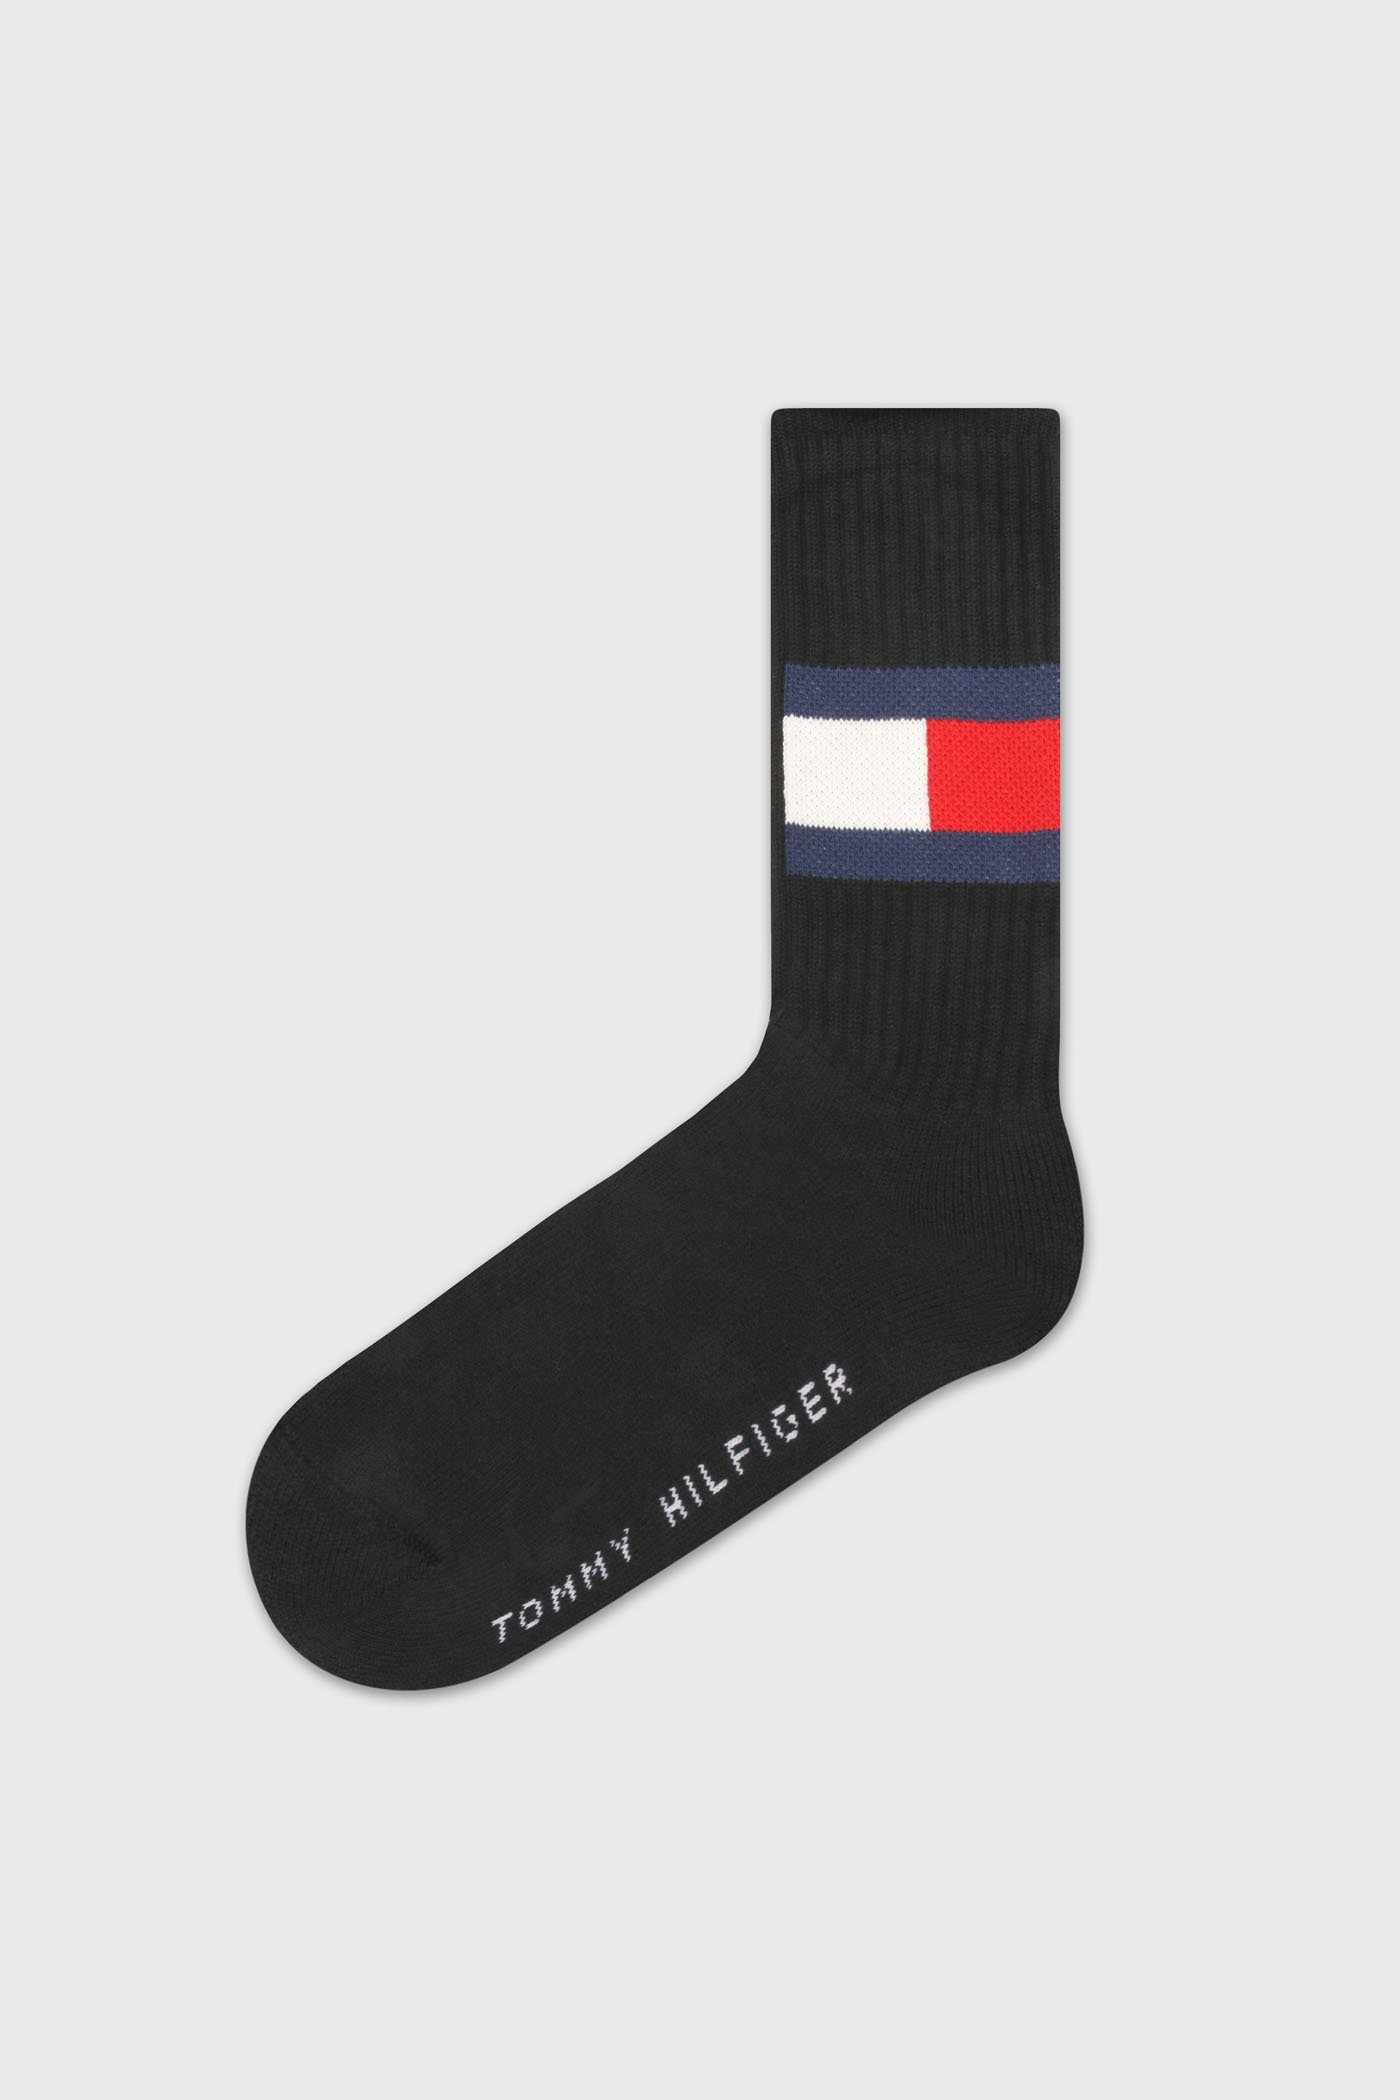 Vysoké modré ponožky Tommy Hilfiger Flag | Astratex.cz